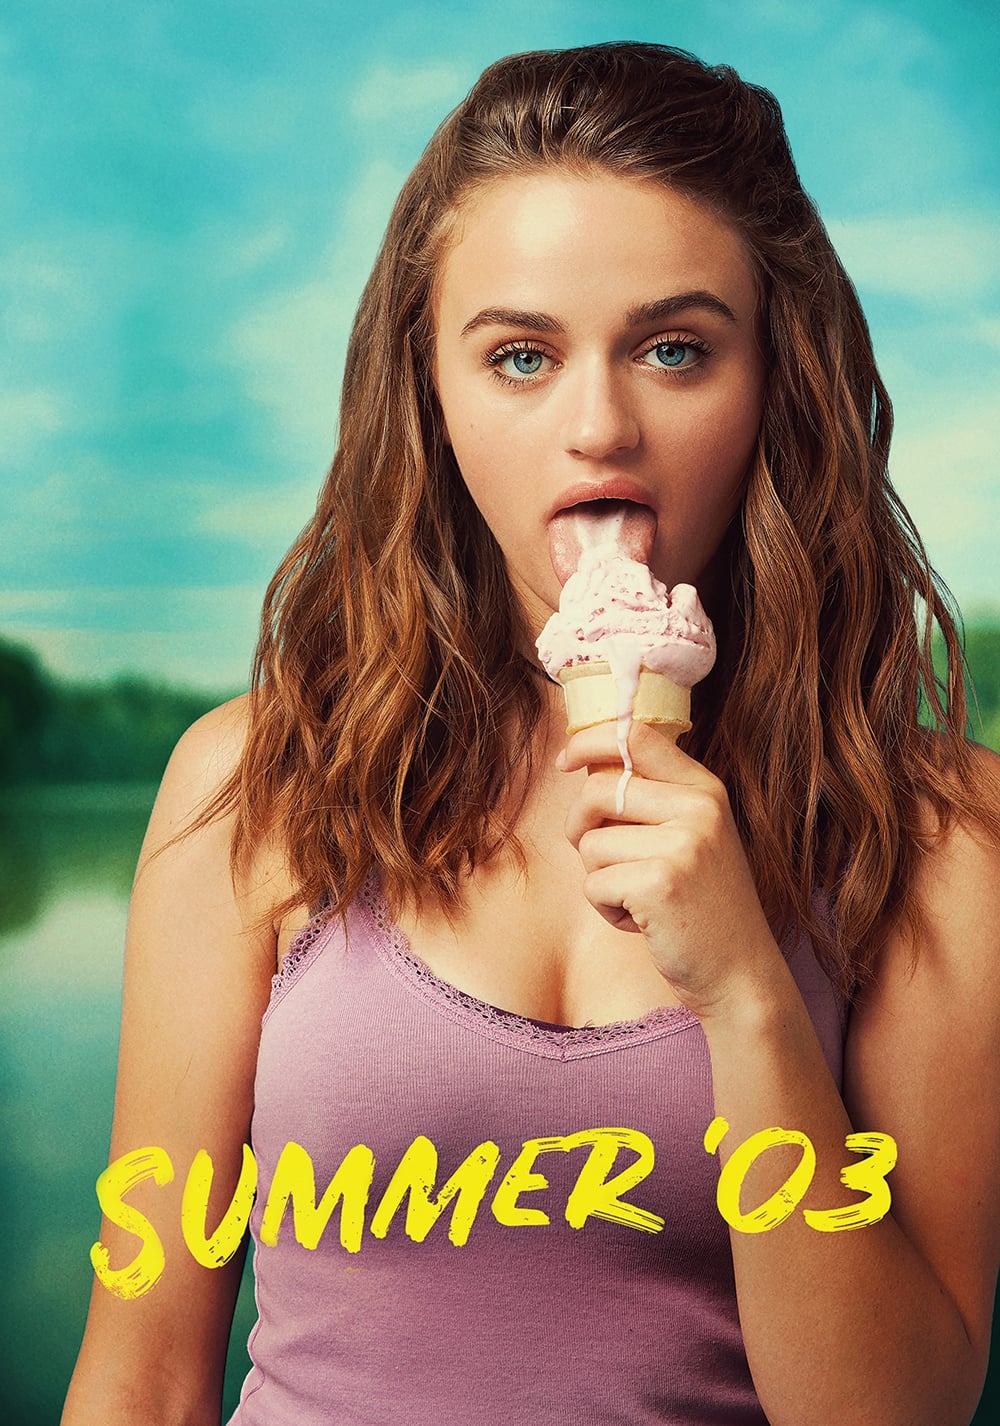 Mùa Hè Đáng Nhớ - Summer '03 (2018)